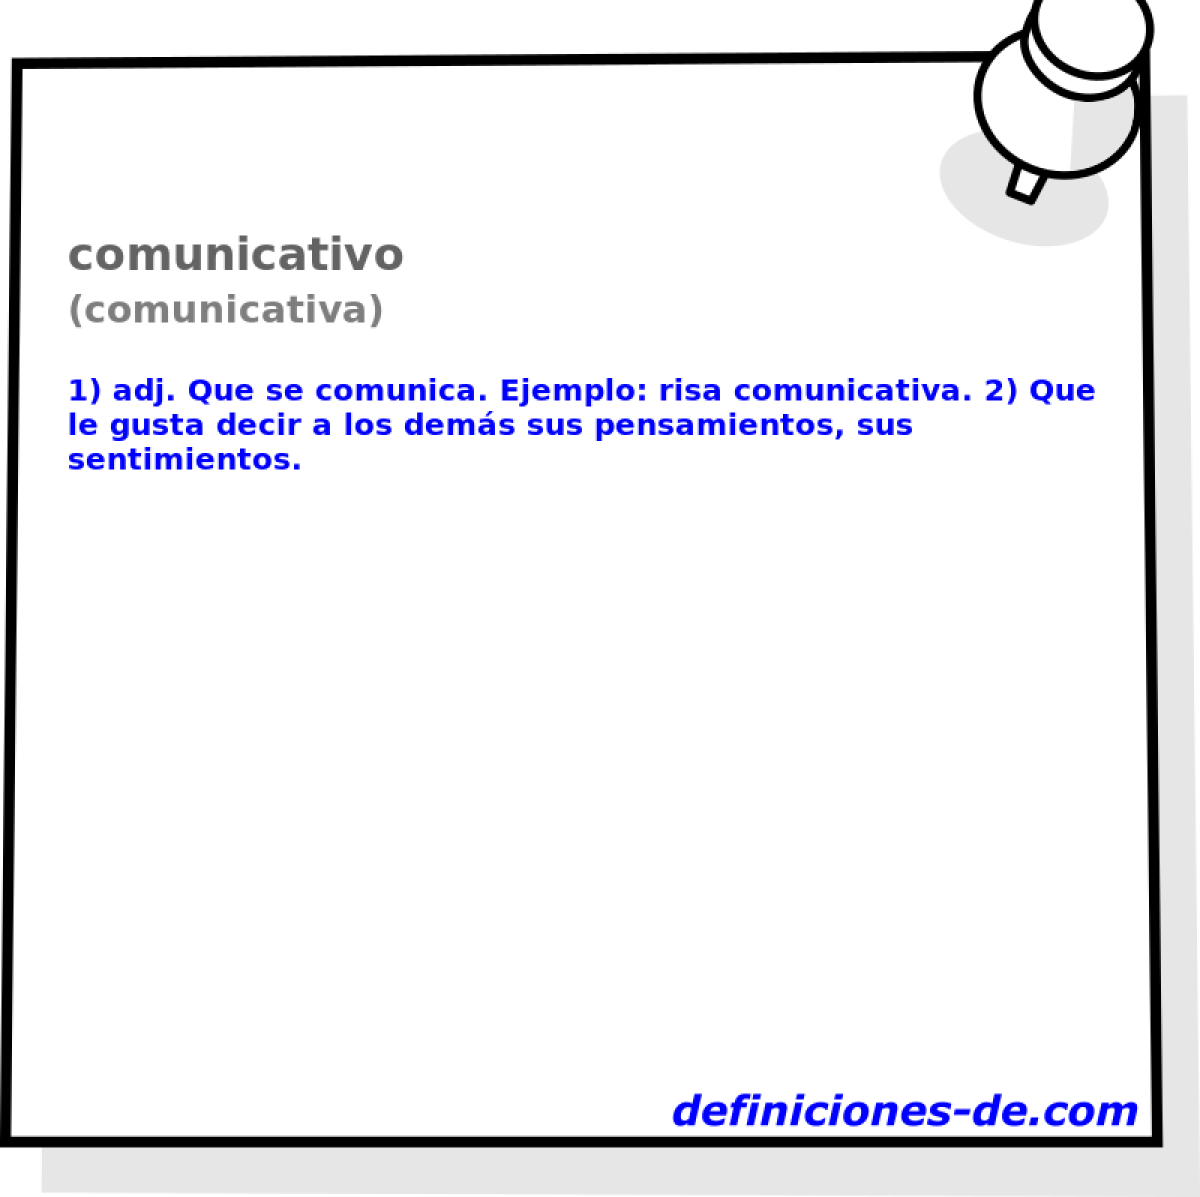 comunicativo (comunicativa)